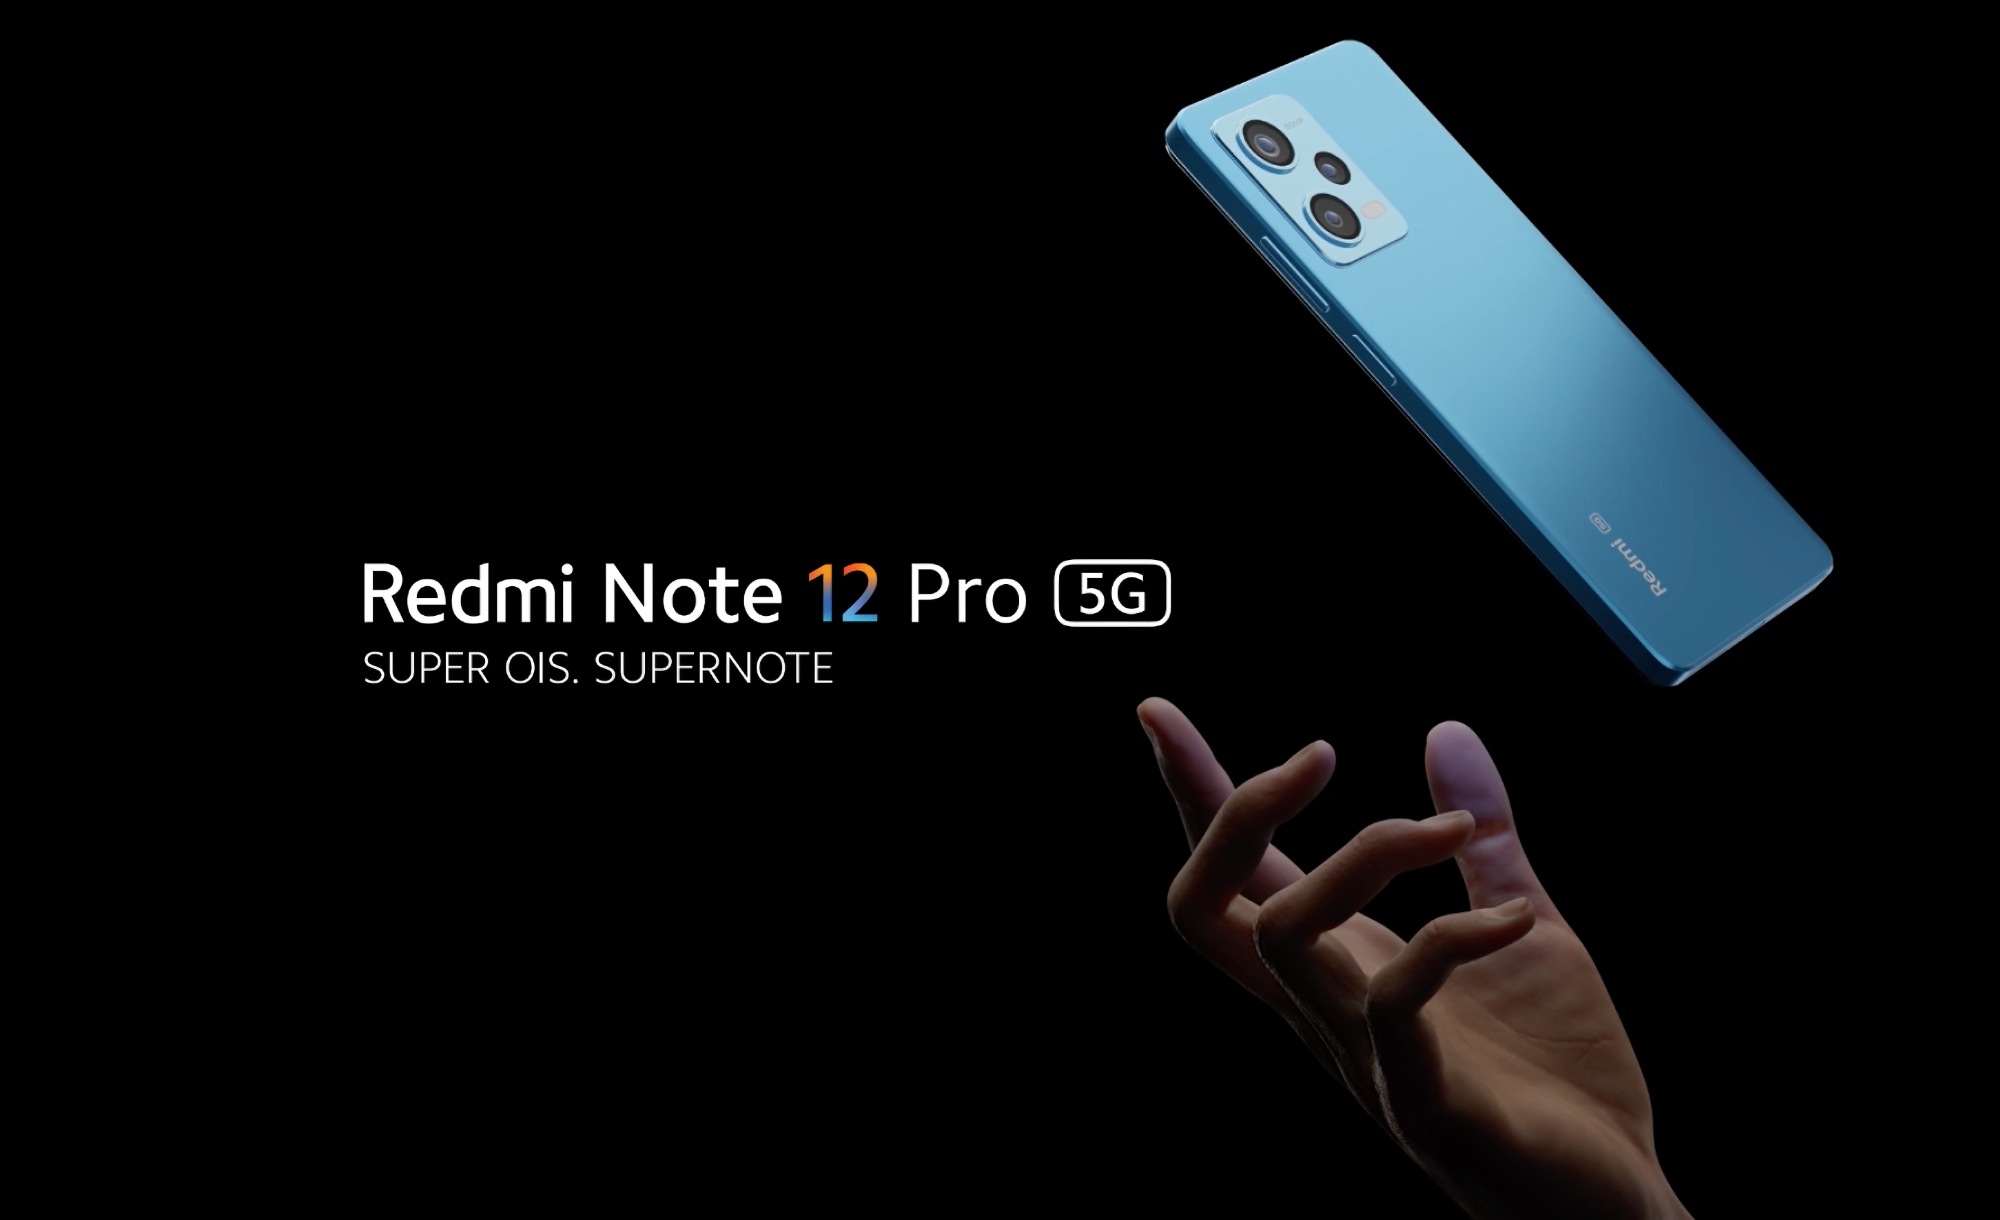 Redmi Note 12 Pro con chip MediaTek Dimensity 1080, cámara Sony IMX766 de 50 MP y carga rápida de 67W desvelado fuera de China